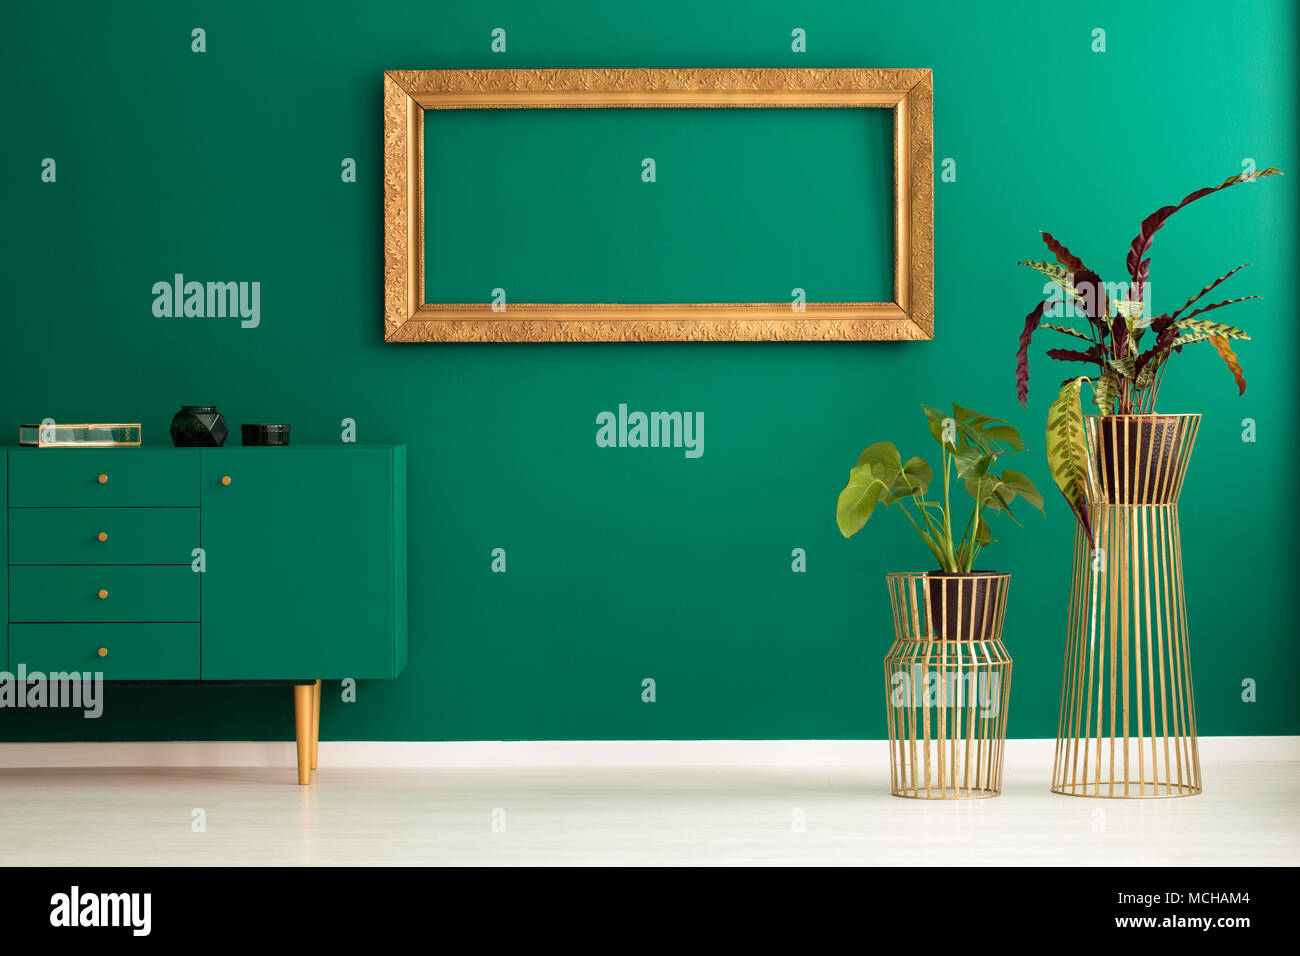 Pflanzen und grün Schrank im Vorraum Interieur mit leeren gold Rahmen auf der Wand Stockfoto